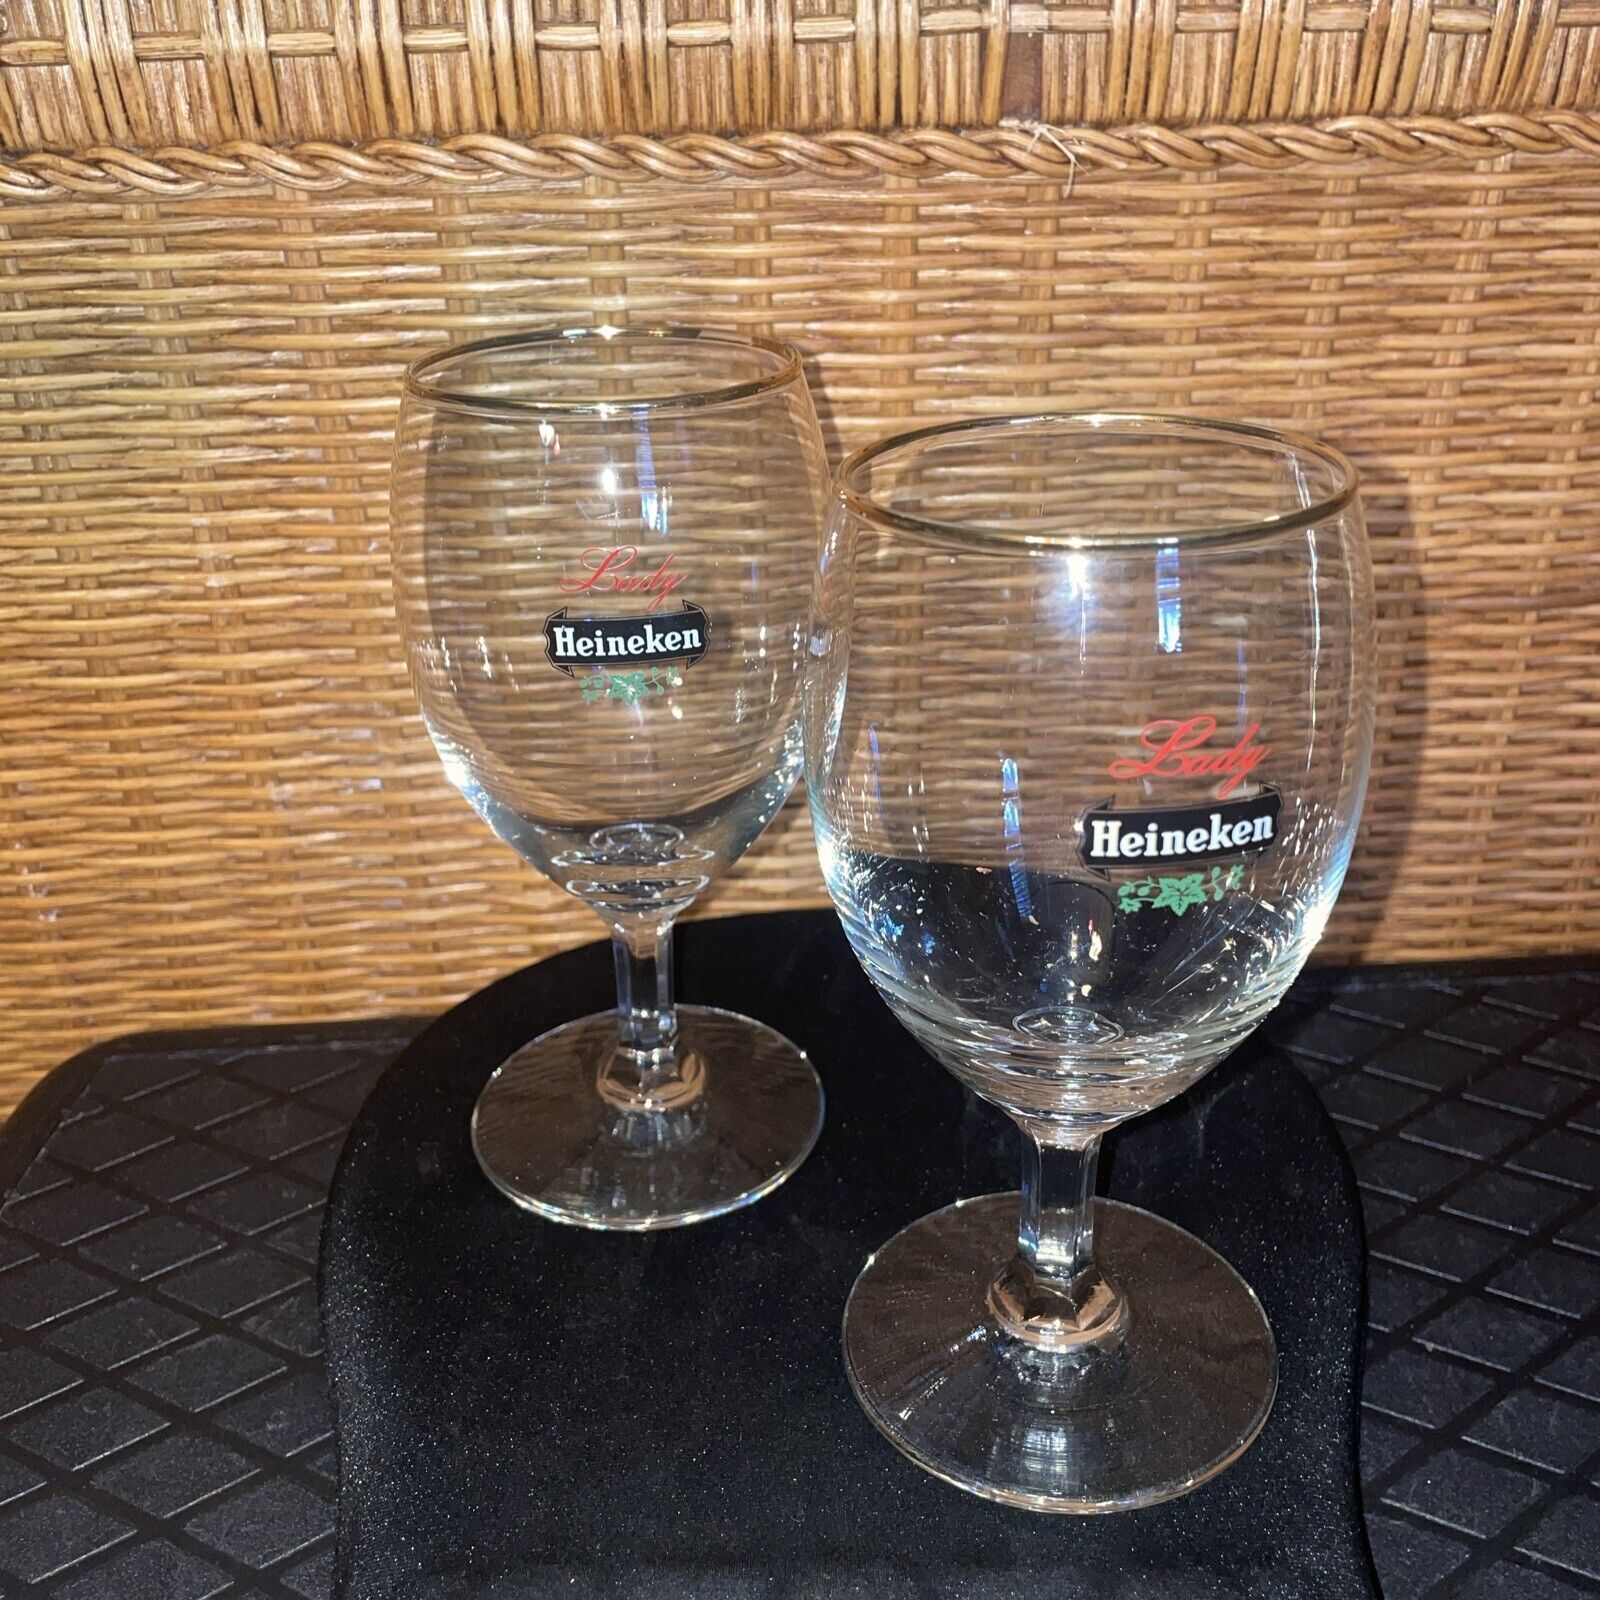 Lot 2 Rare Vintage 1965 Lady Heineken Beer Wine Glasses 6 1/2”